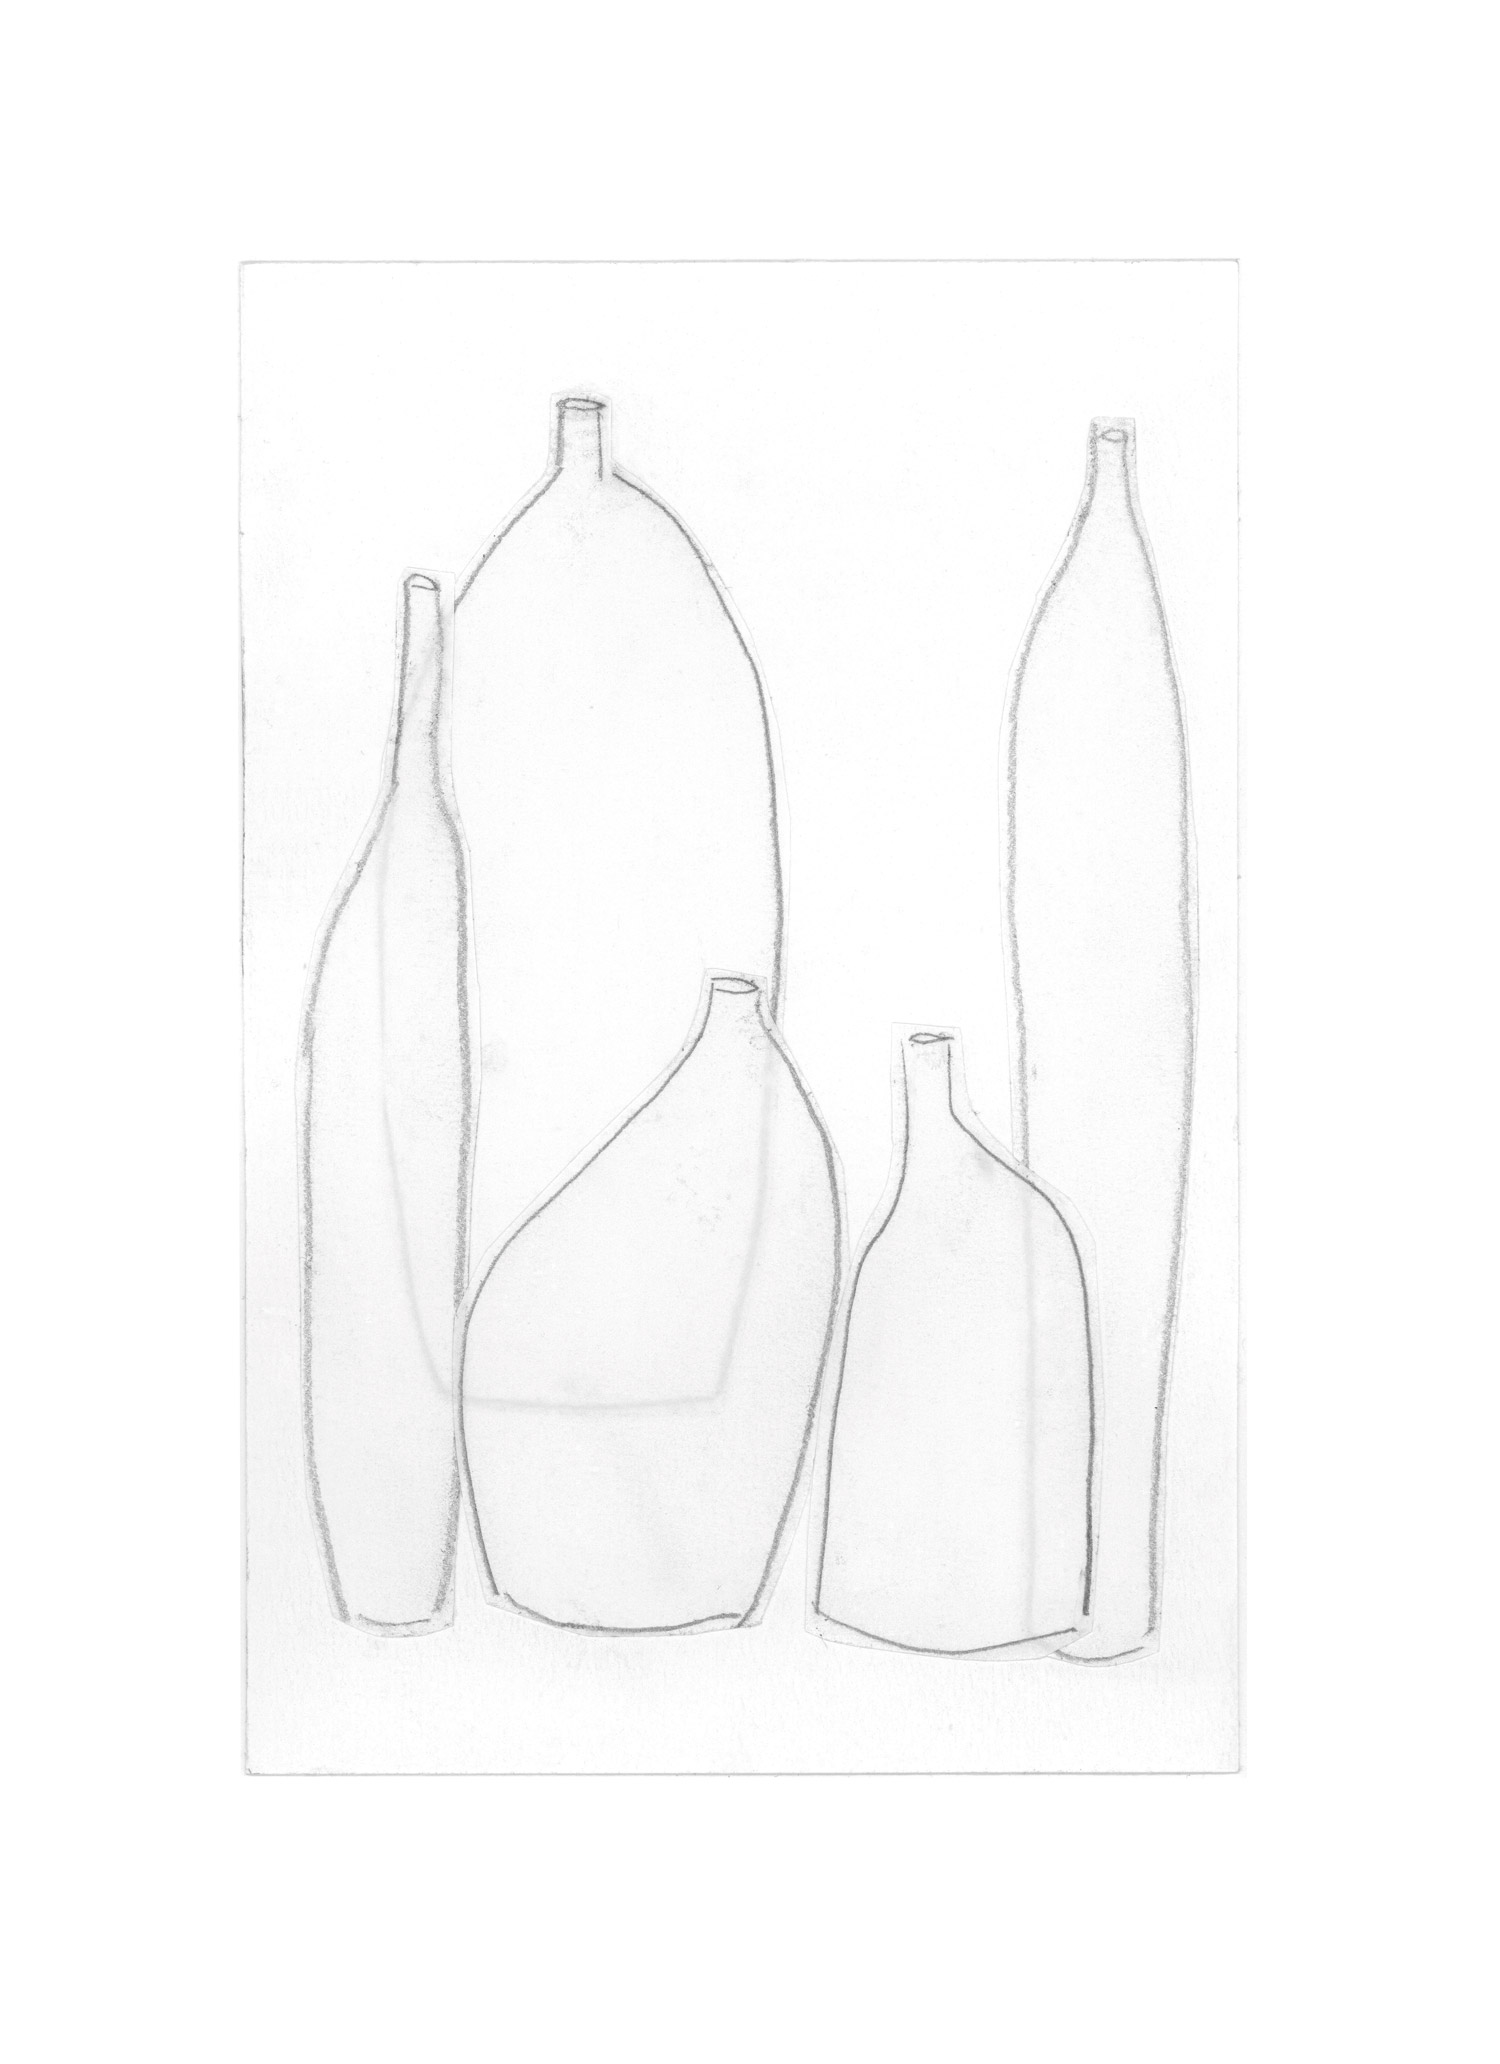 mediterranean bottles collage series, collage no. 5